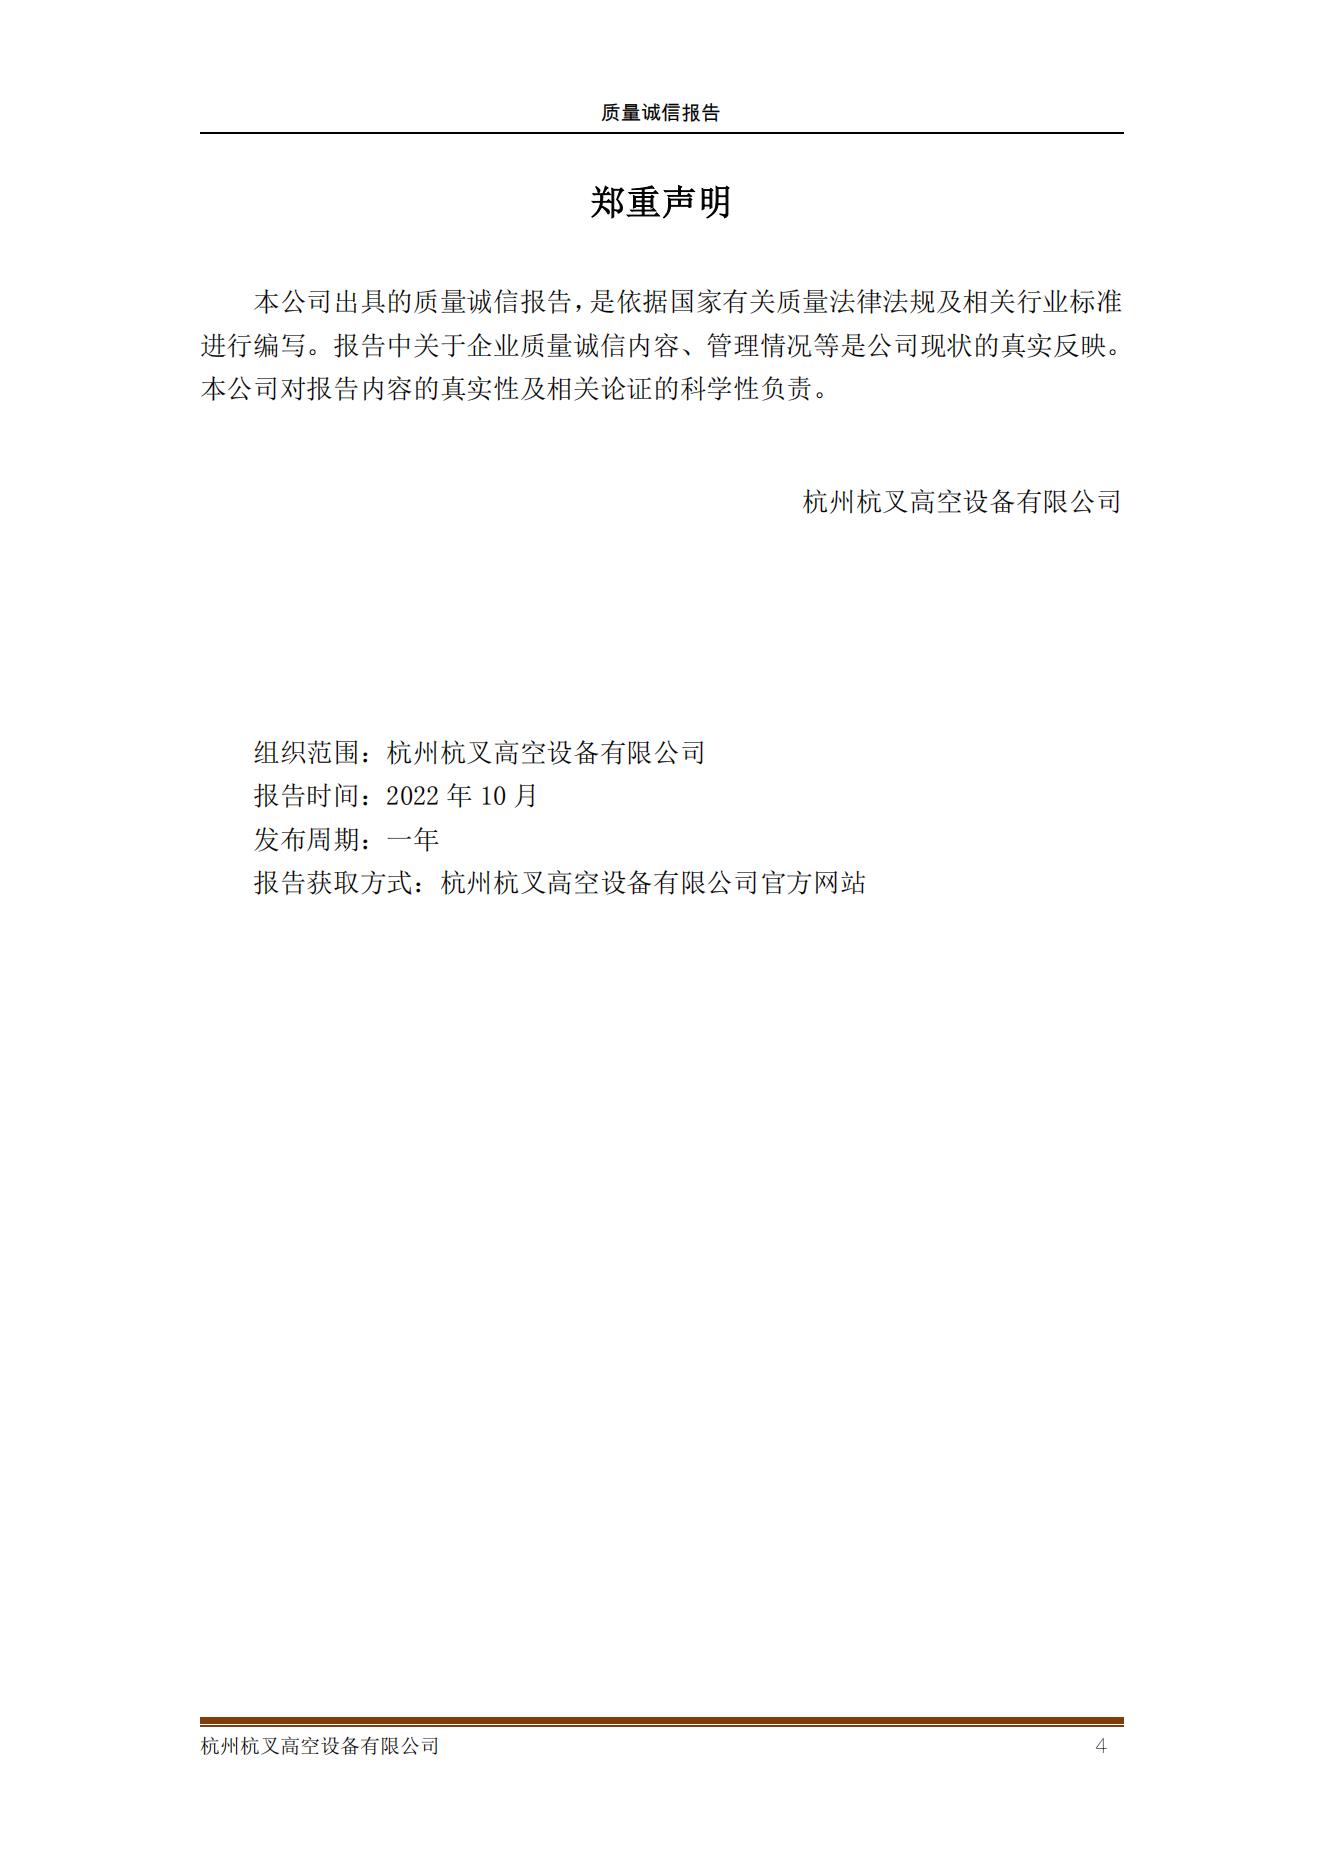 杭州杭叉高空设备公司2021年质量诚信报告(图4)